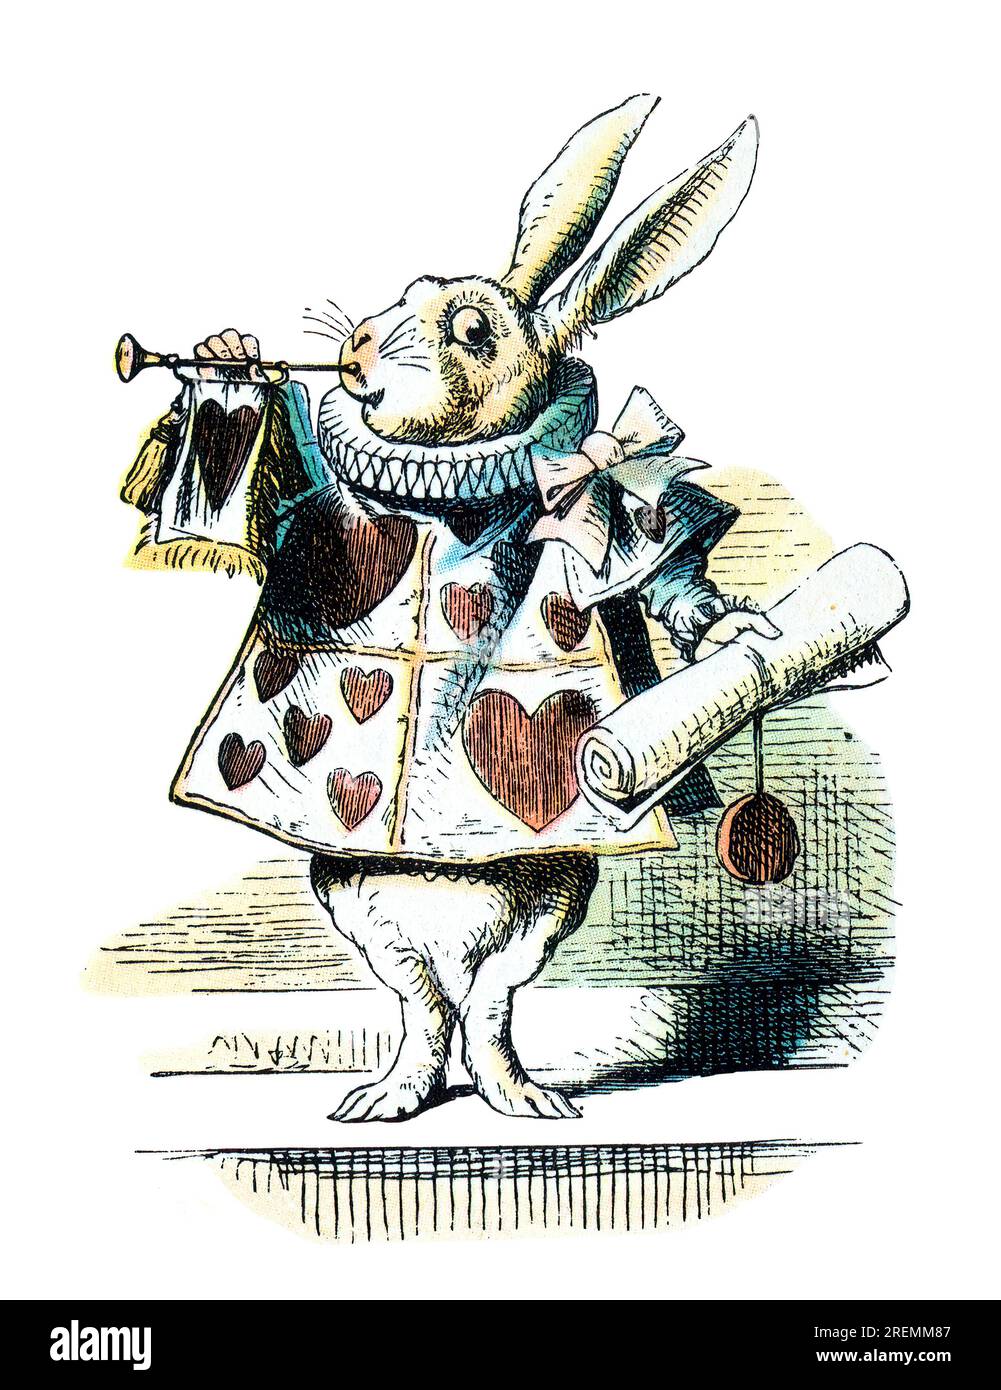 Herald Alice dans Wonderland illustration de Tenniel colorée Banque D'Images